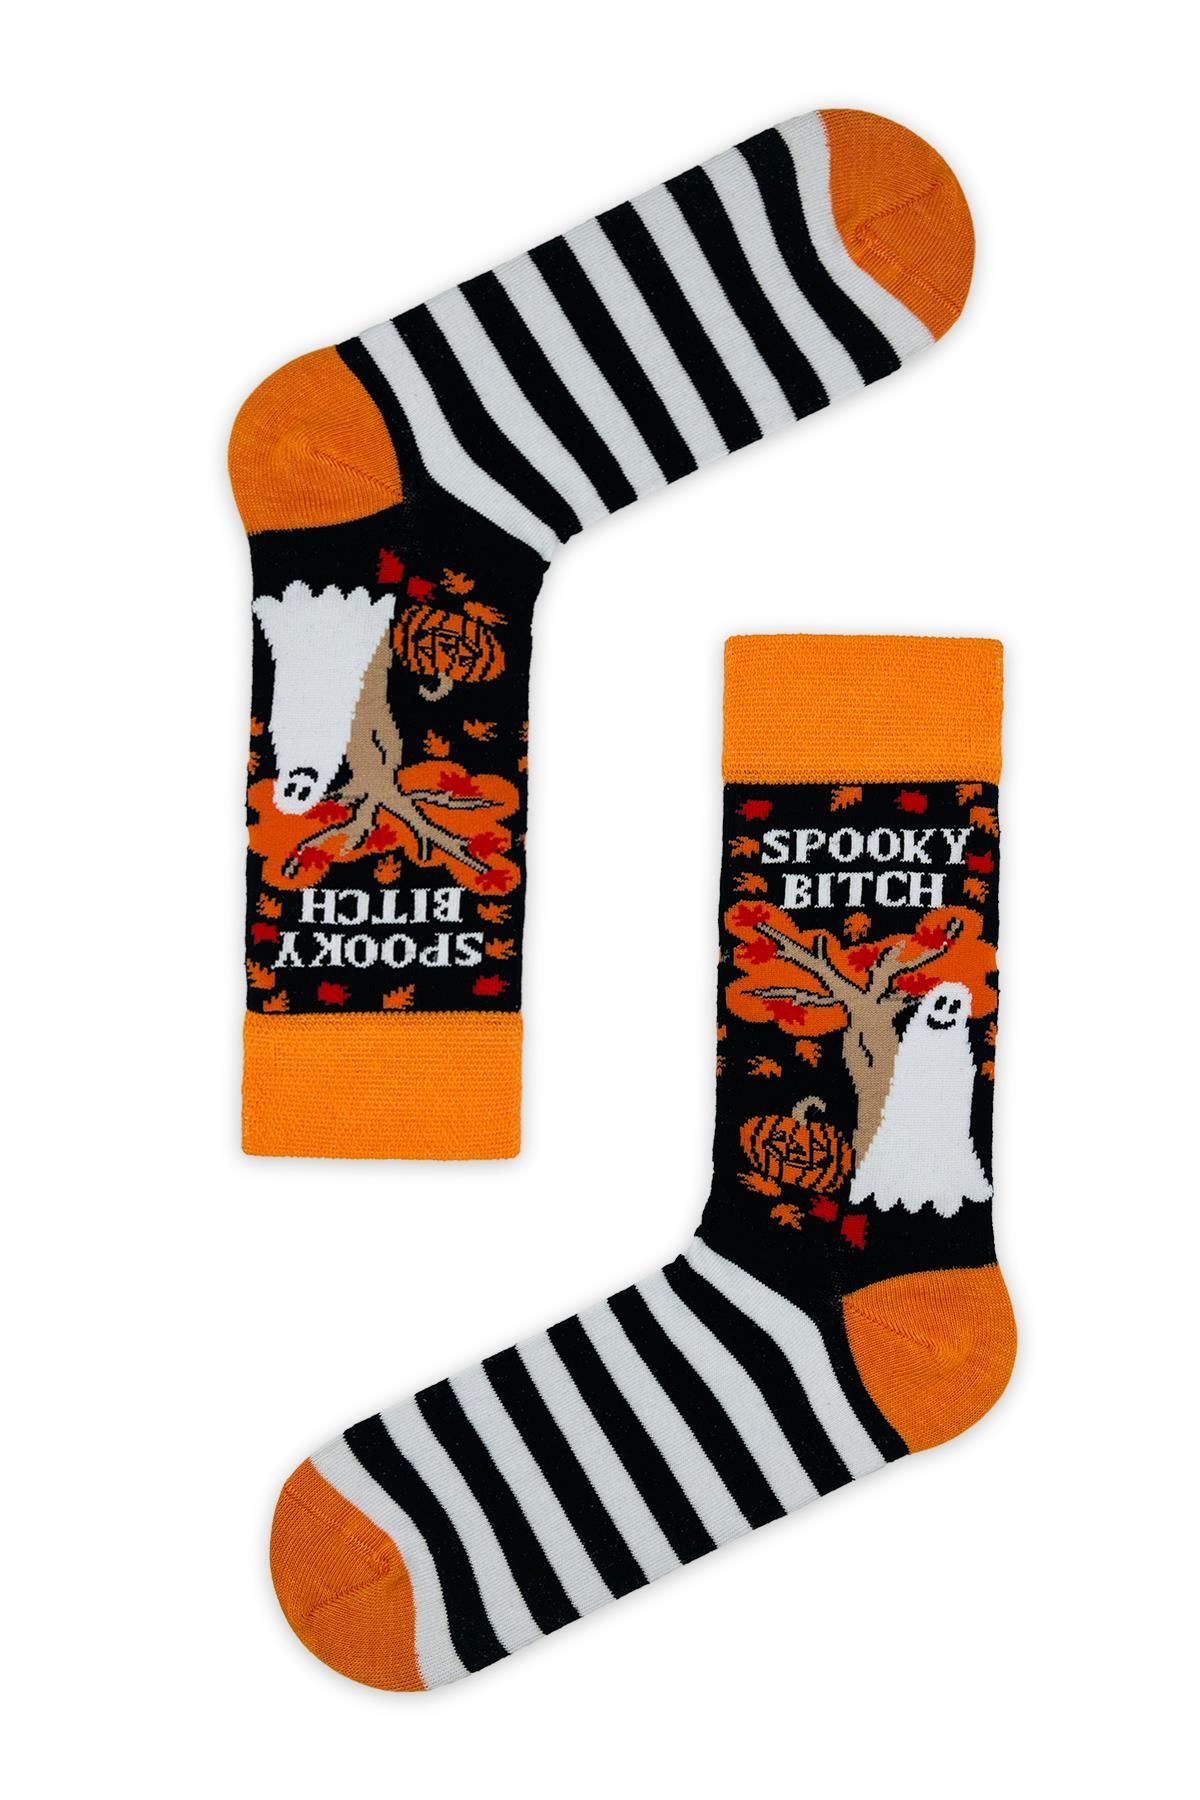 CARNAVAL SOCKS Spooky B.tch Yazılı Halloween Çorabı